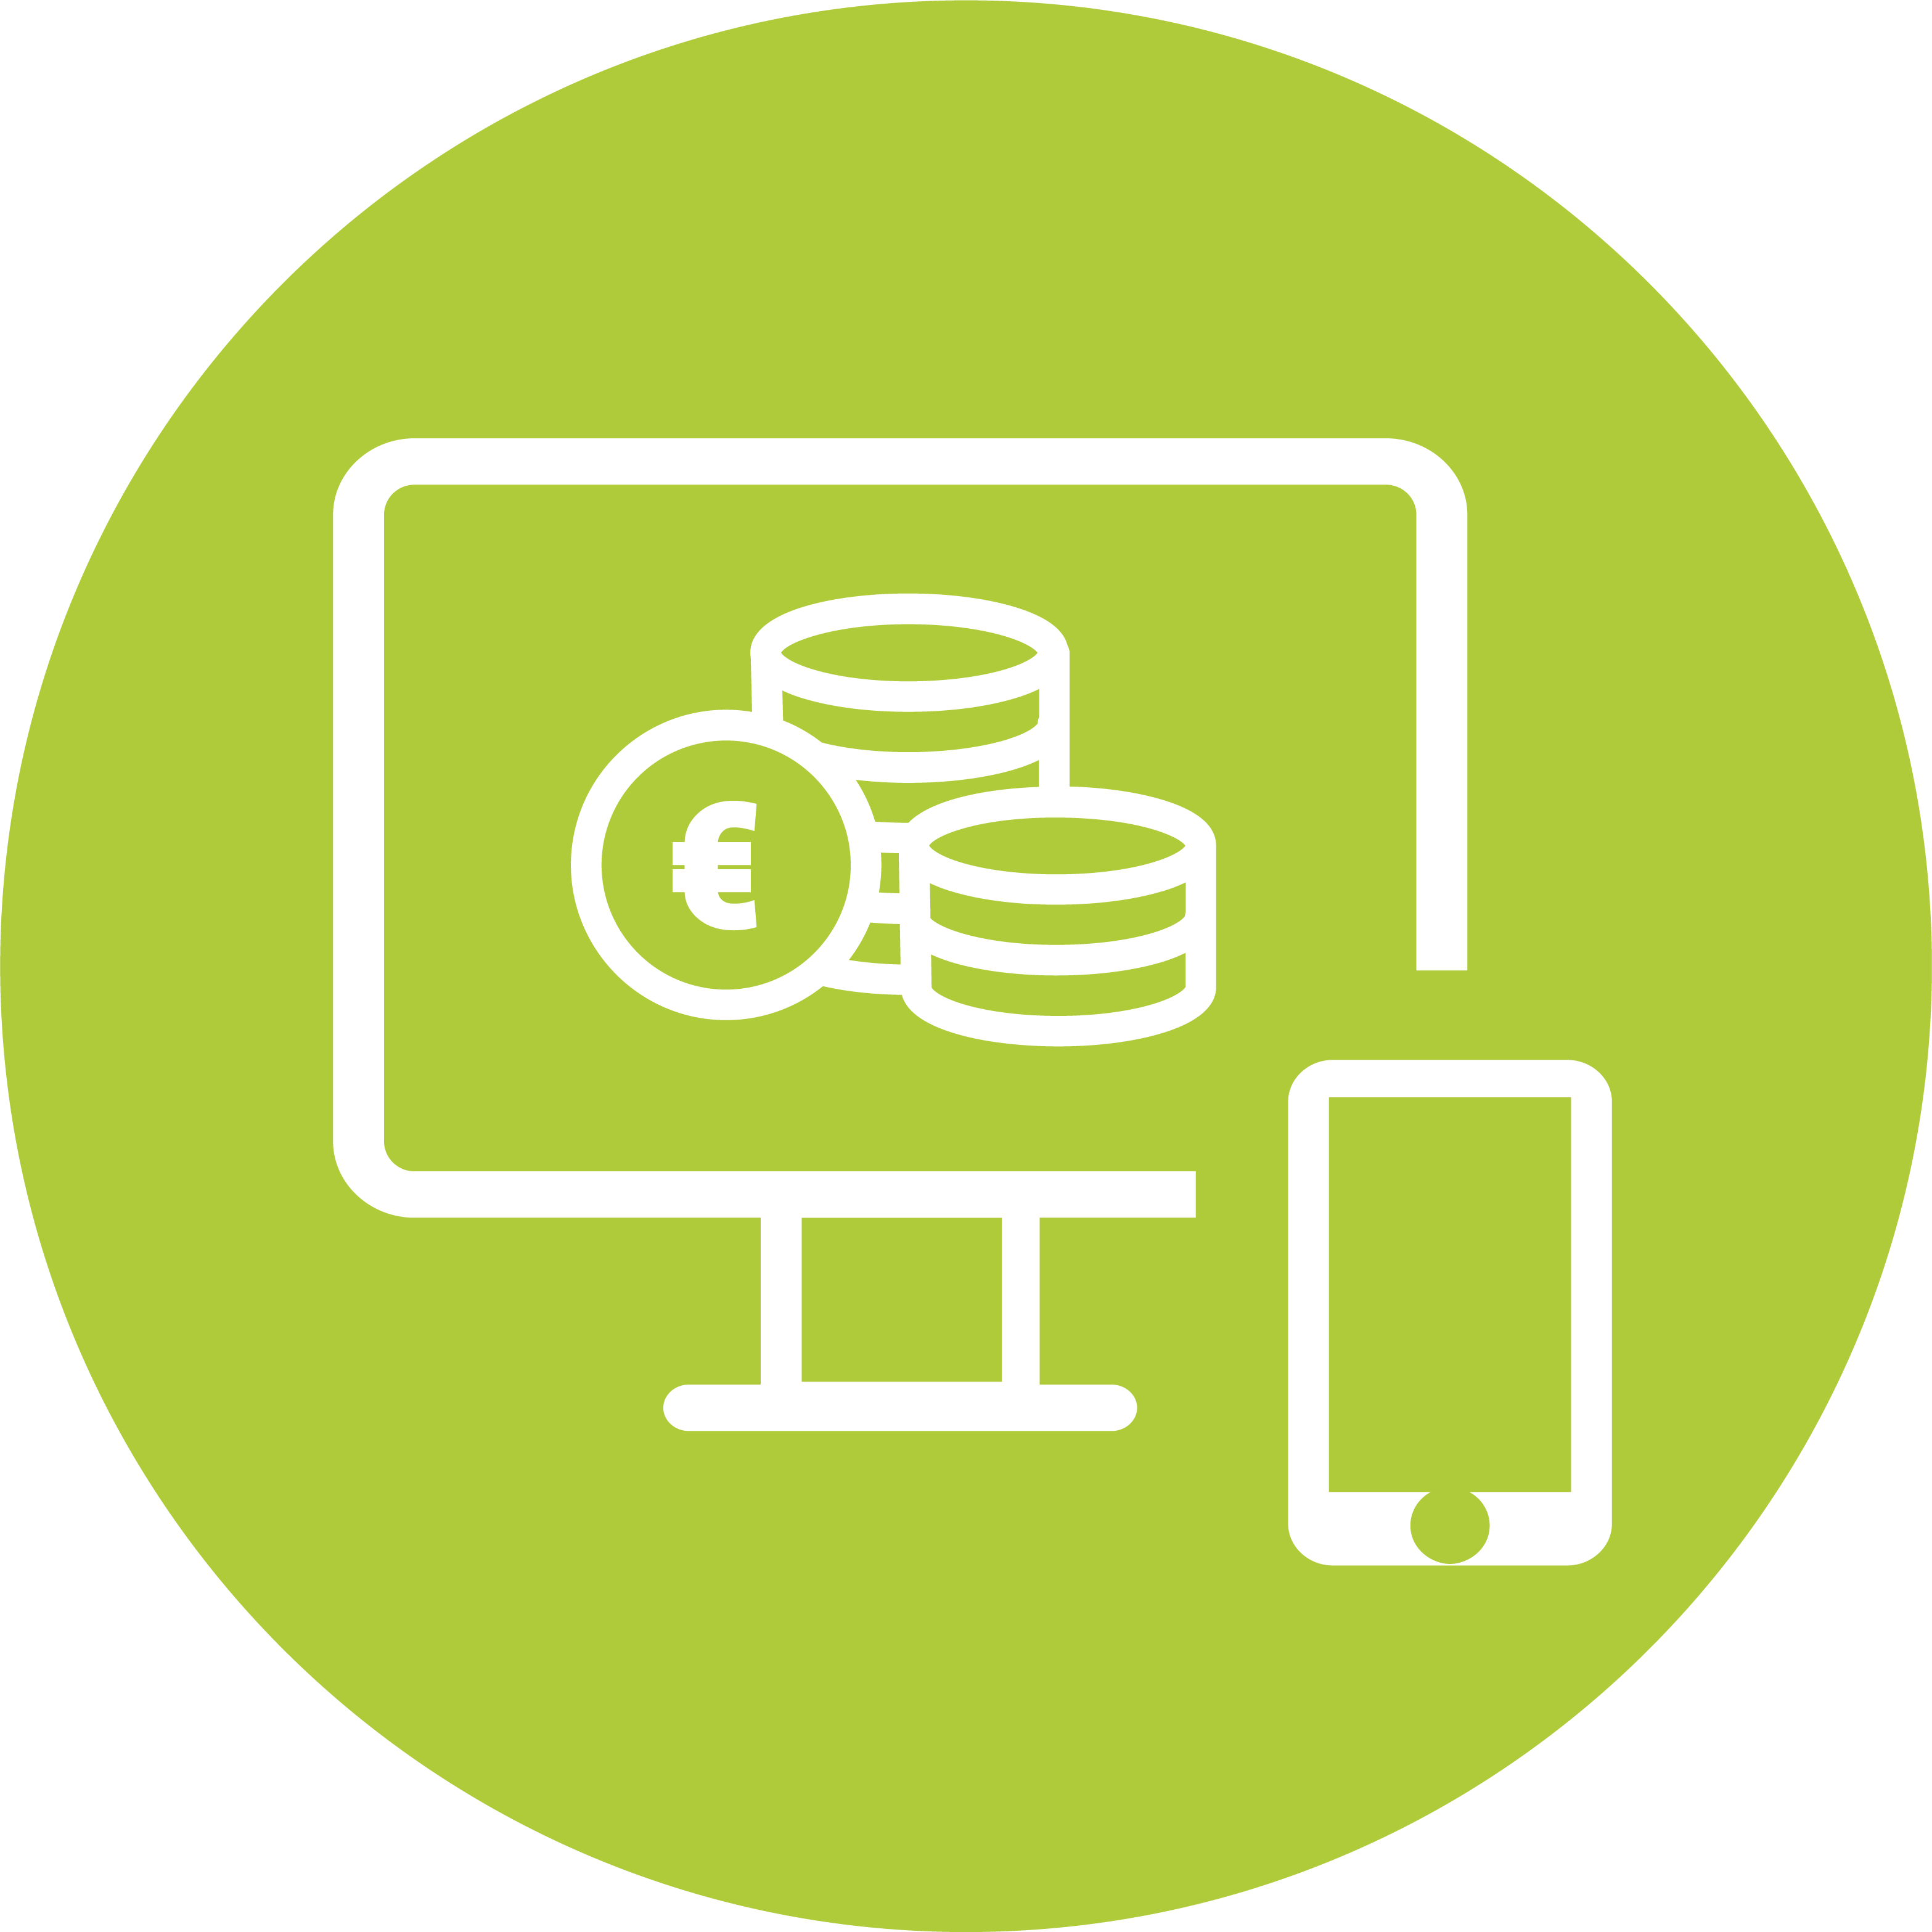 Icon mit einem Monitor, Münzstapeln und einem Smartphone auf grünem kreisförmigen Hintergrund, symbolisch für ein persönliches Hardwarebudget.